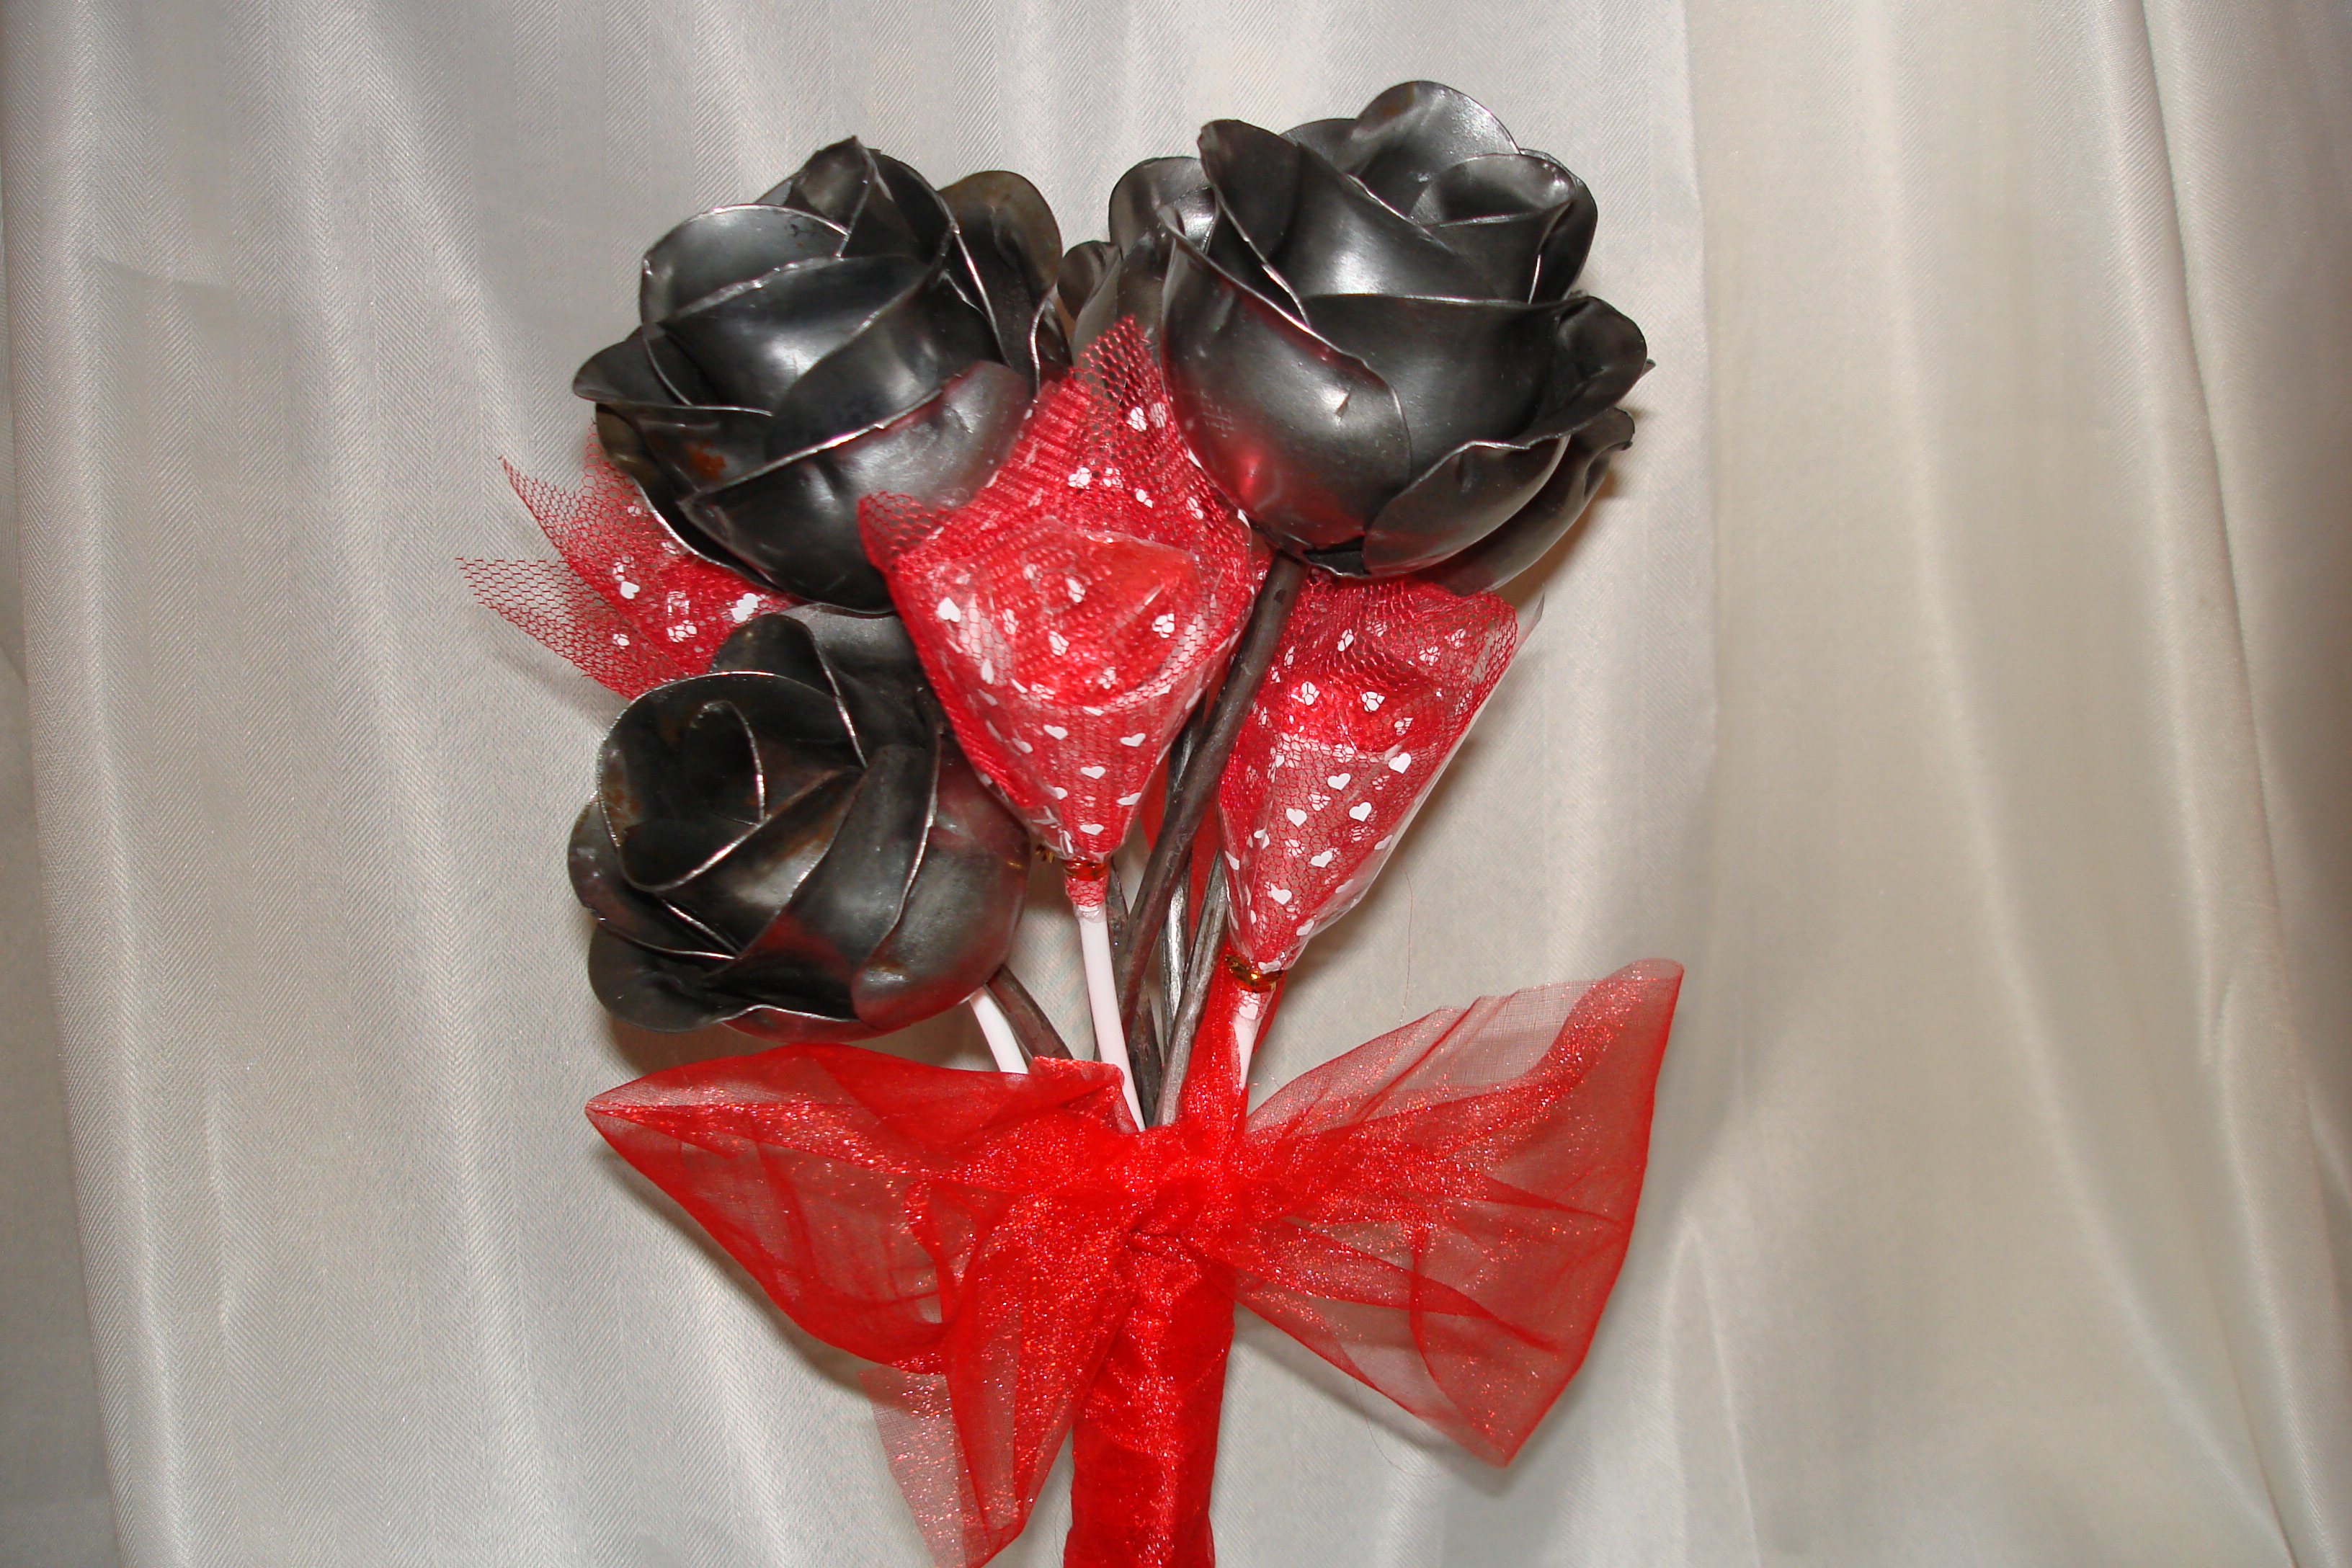 Steel Rose Valentine's Day Bouquet